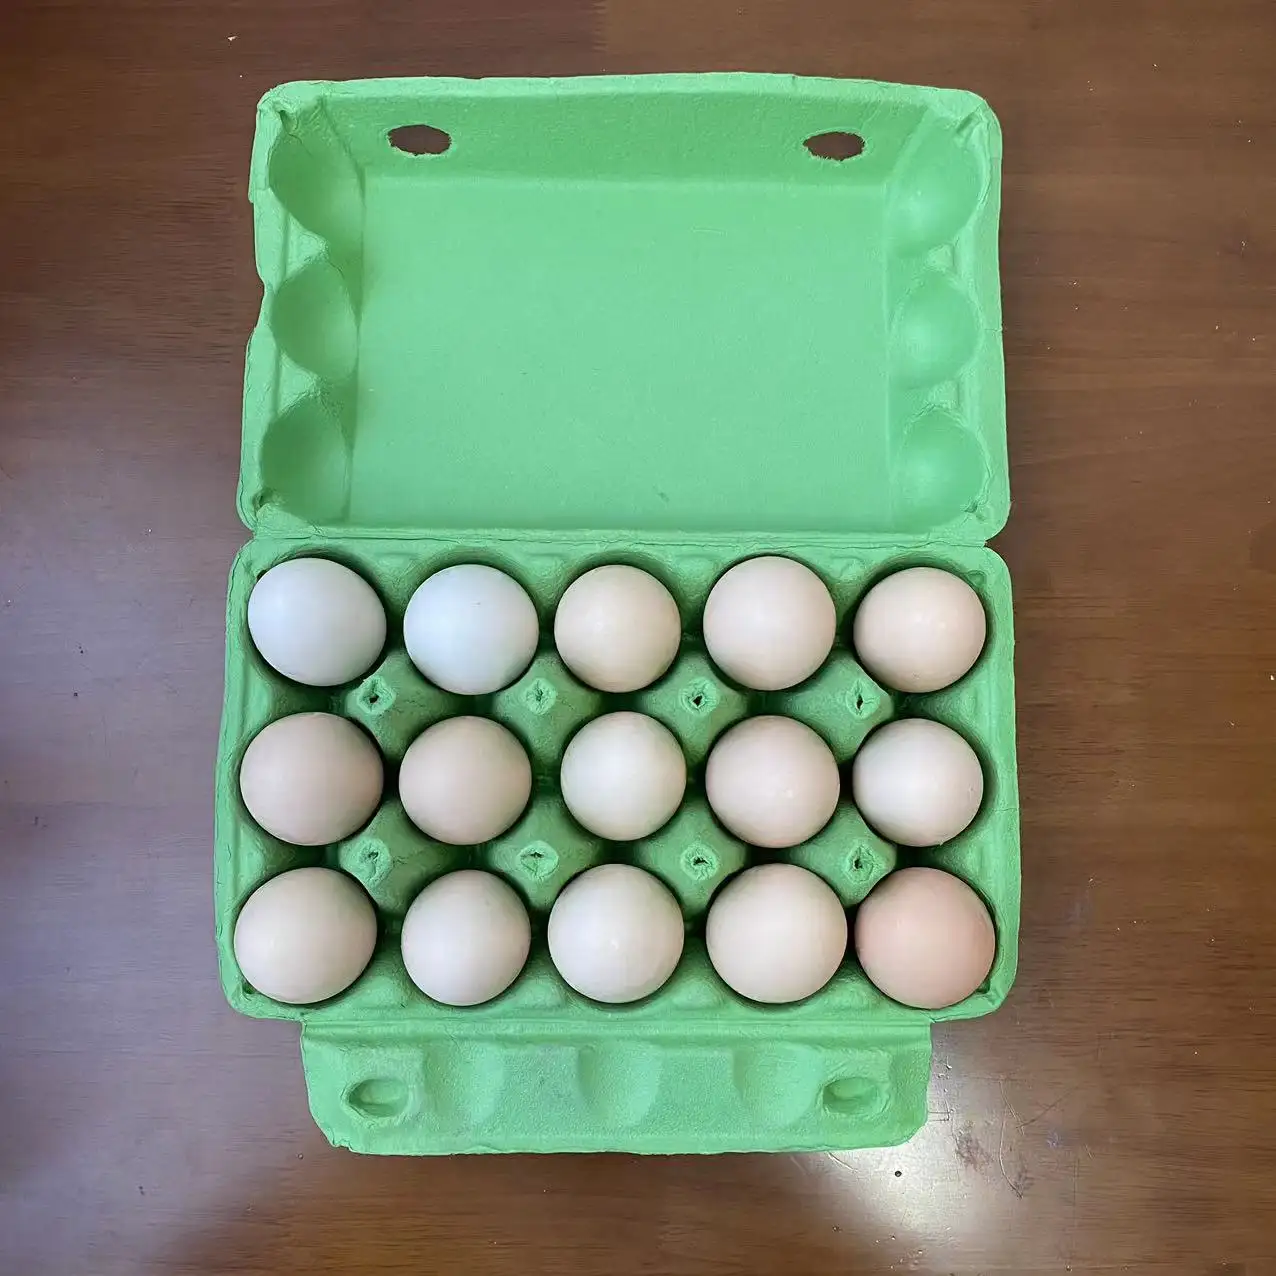 Bandeja para huevos de pulpa de bagazo de caña de azúcar personalizada, bandeja de almacenamiento de huevos biodegradable de bandeja de cartón para almacenamiento de huevos familiar